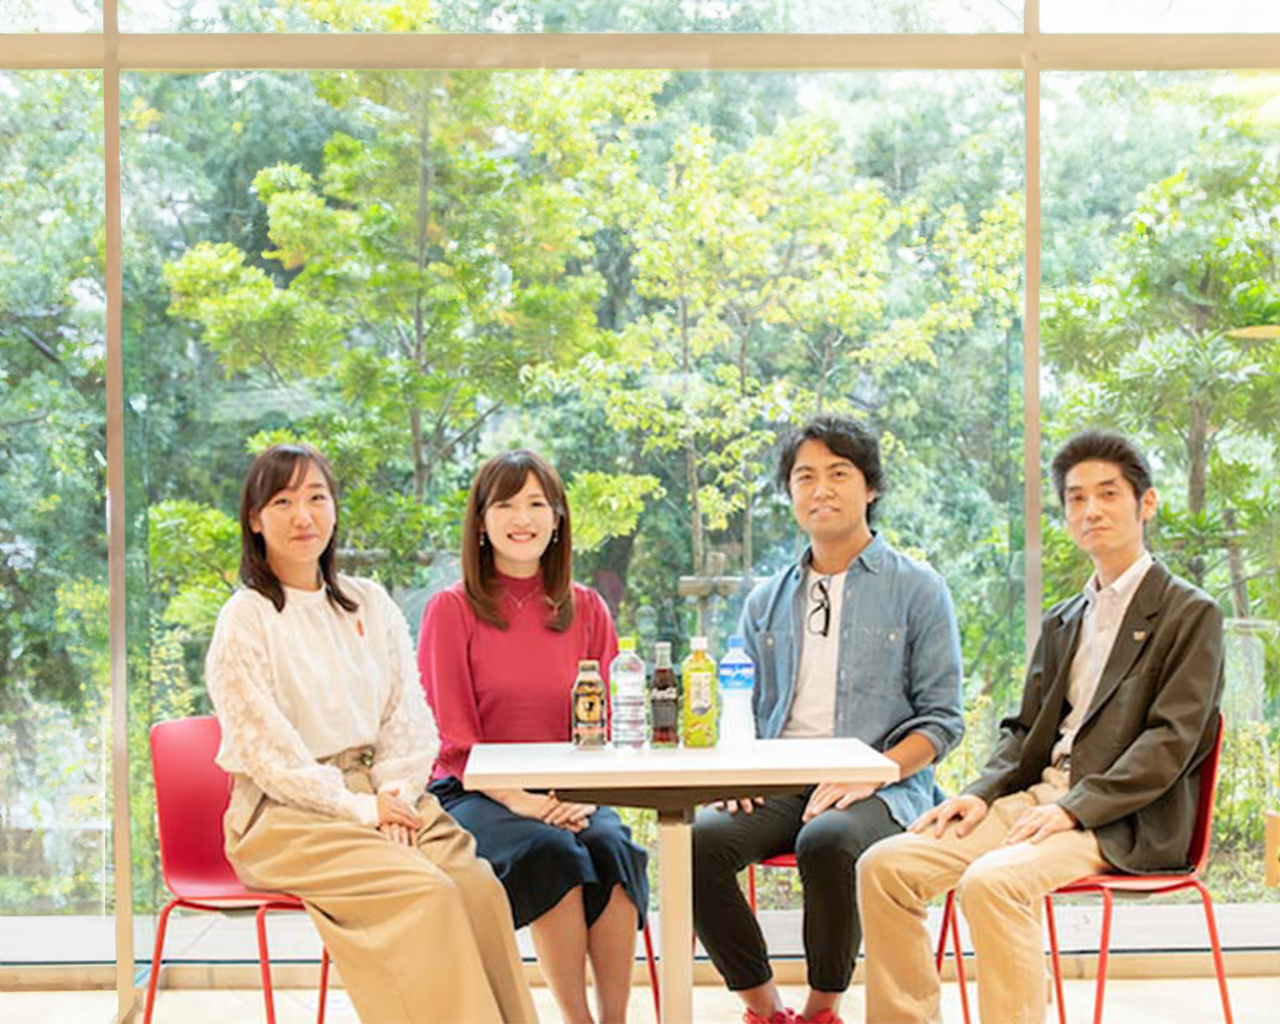 コカ・コーラ社の東京2020チーム4人の写真